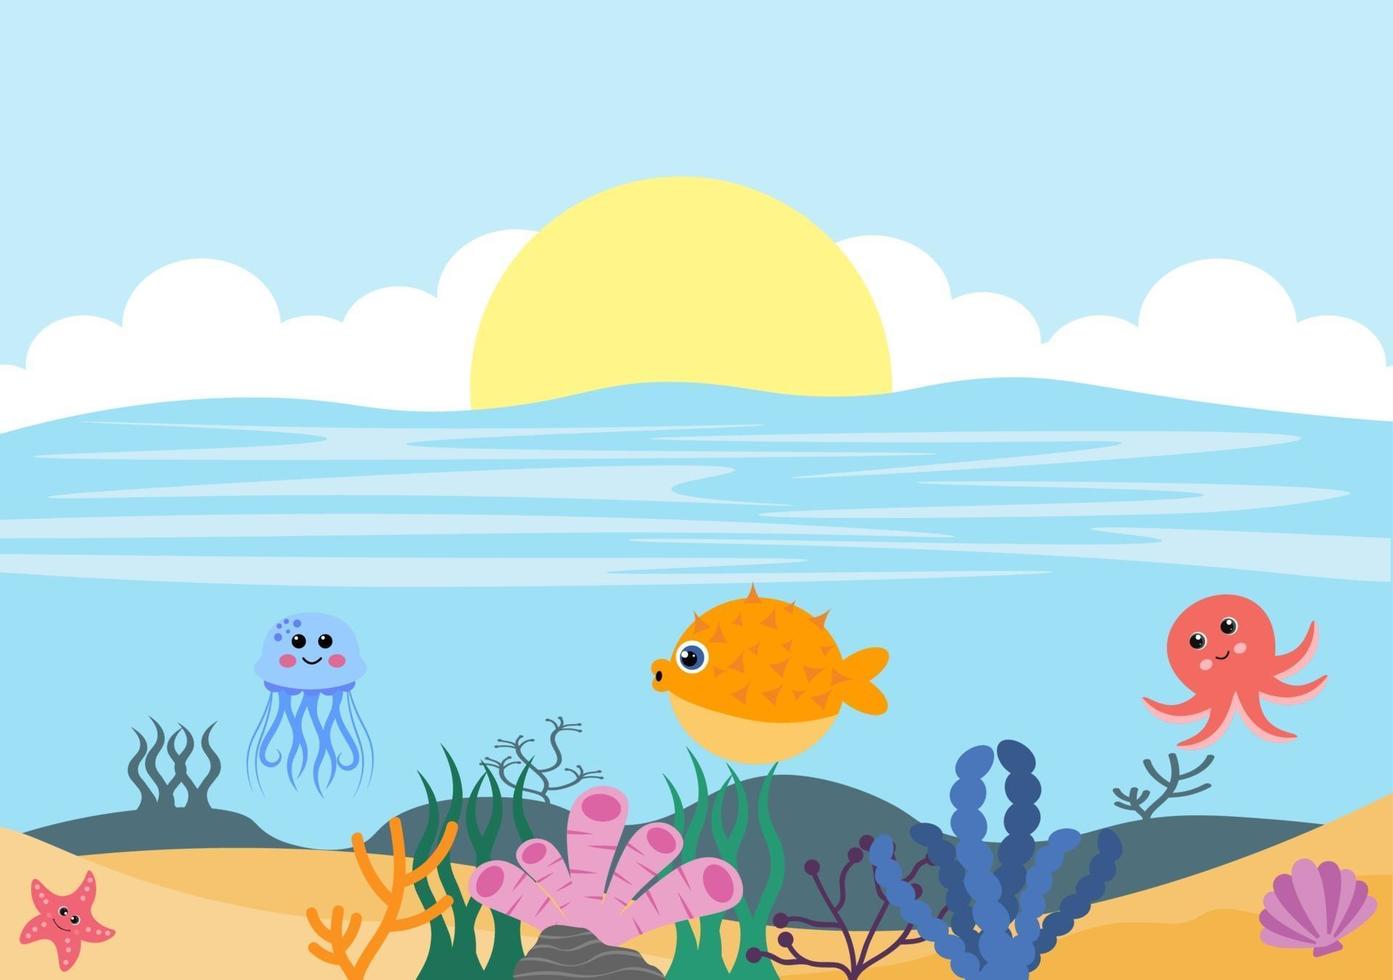 paisaje submarino y linda vida animal en el mar con caballitos de mar, estrellas de mar, pulpos, tortugas, tiburones, peces, medusas, cangrejos. ilustración vectorial vector